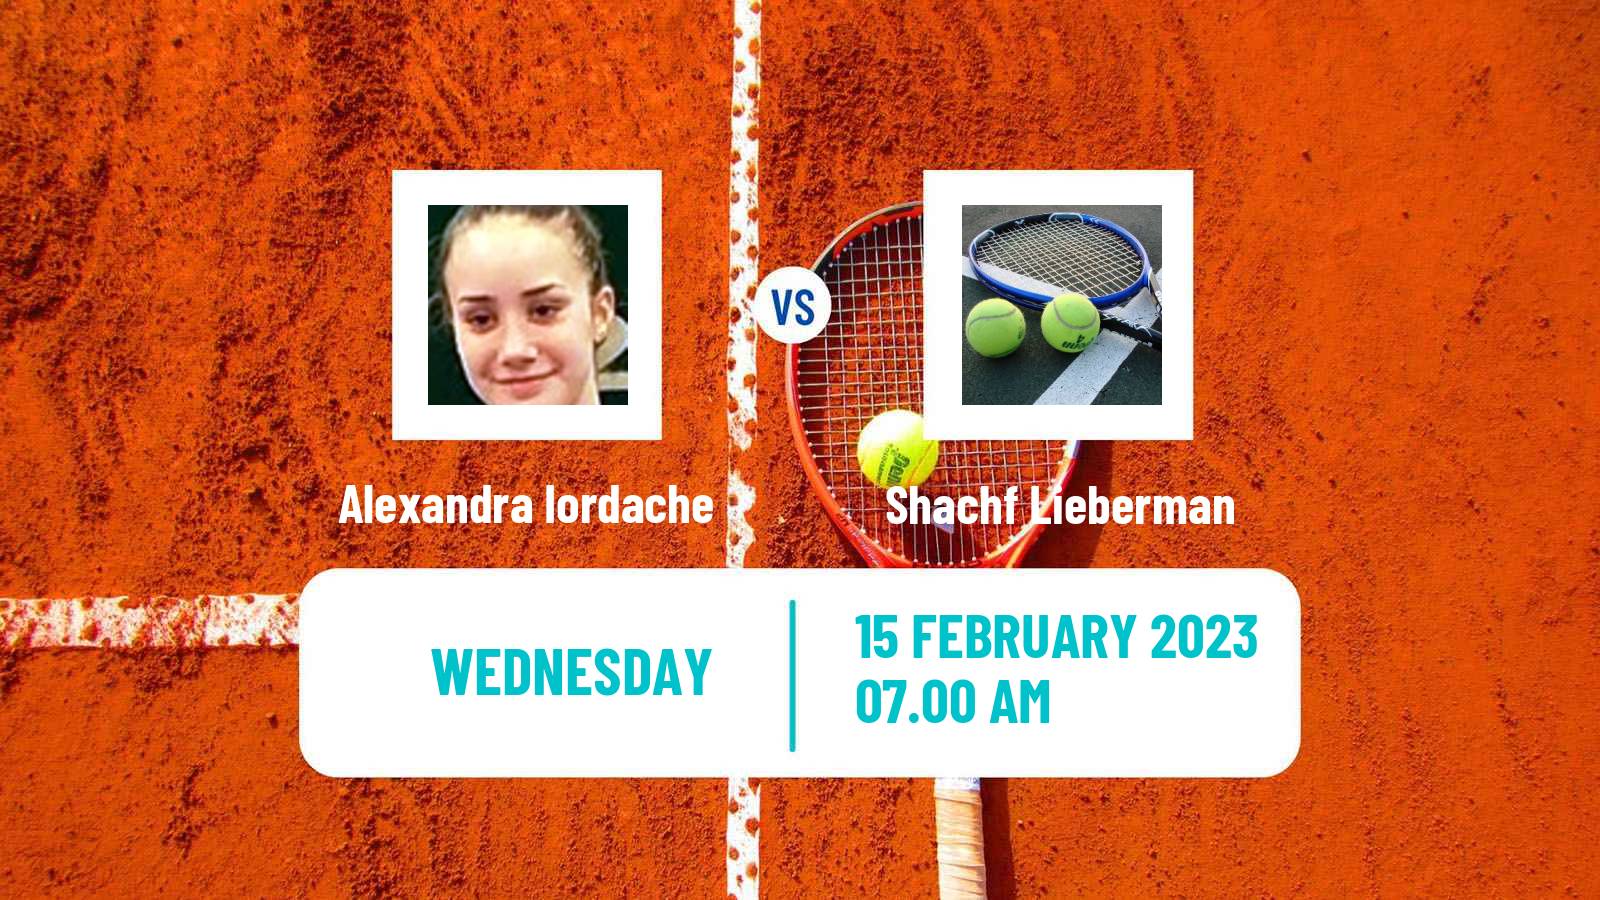 Tennis ITF Tournaments Alexandra Iordache - Shachf Lieberman